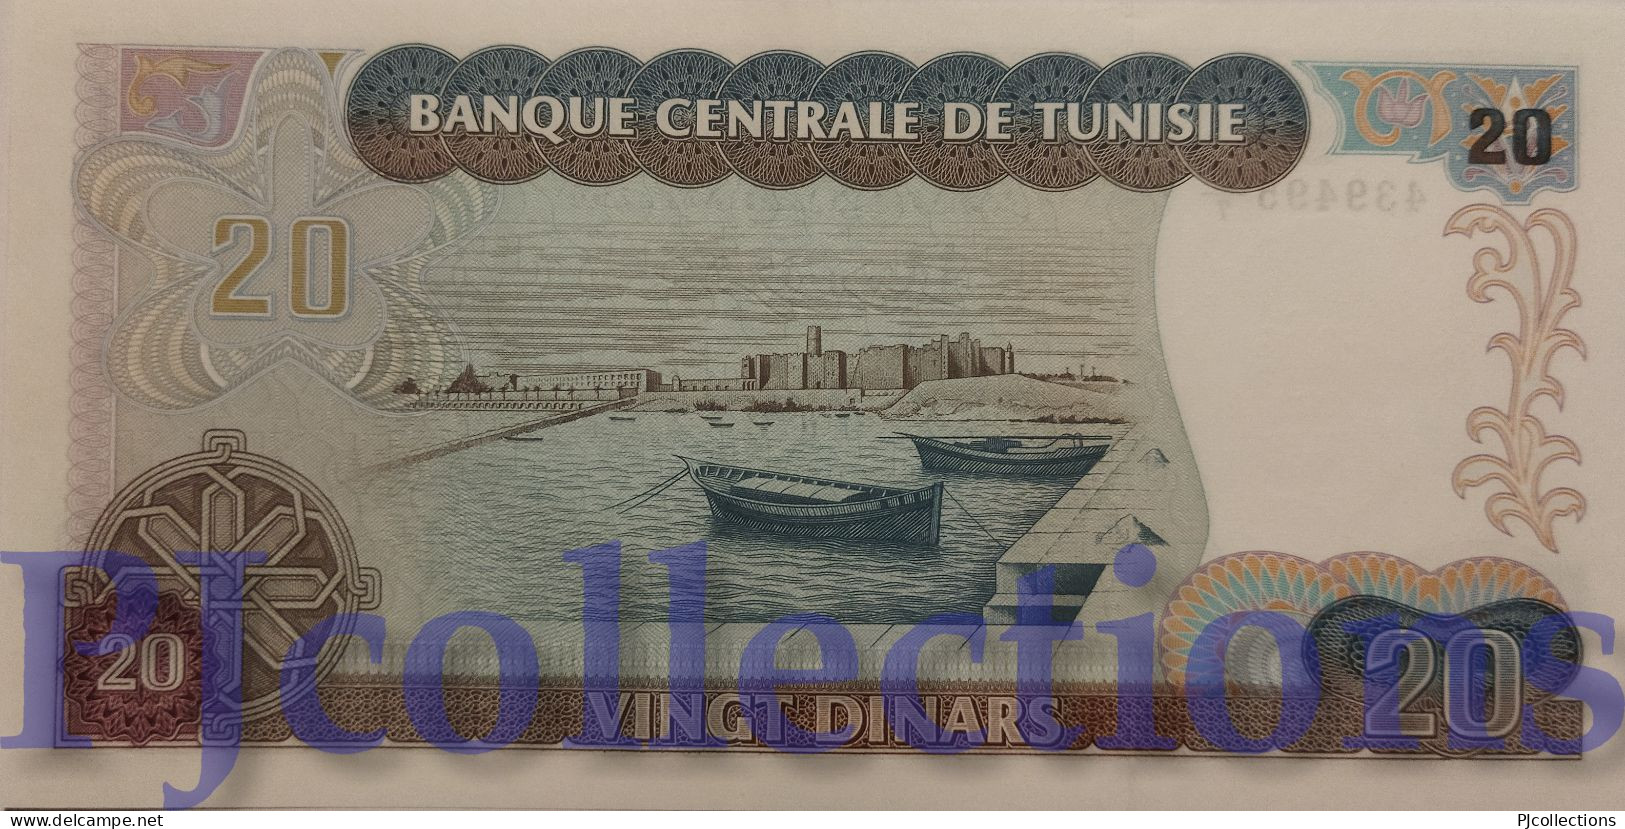 TUNISIA 20 DINARS 1980 PICK 77 UNC - Tunisie